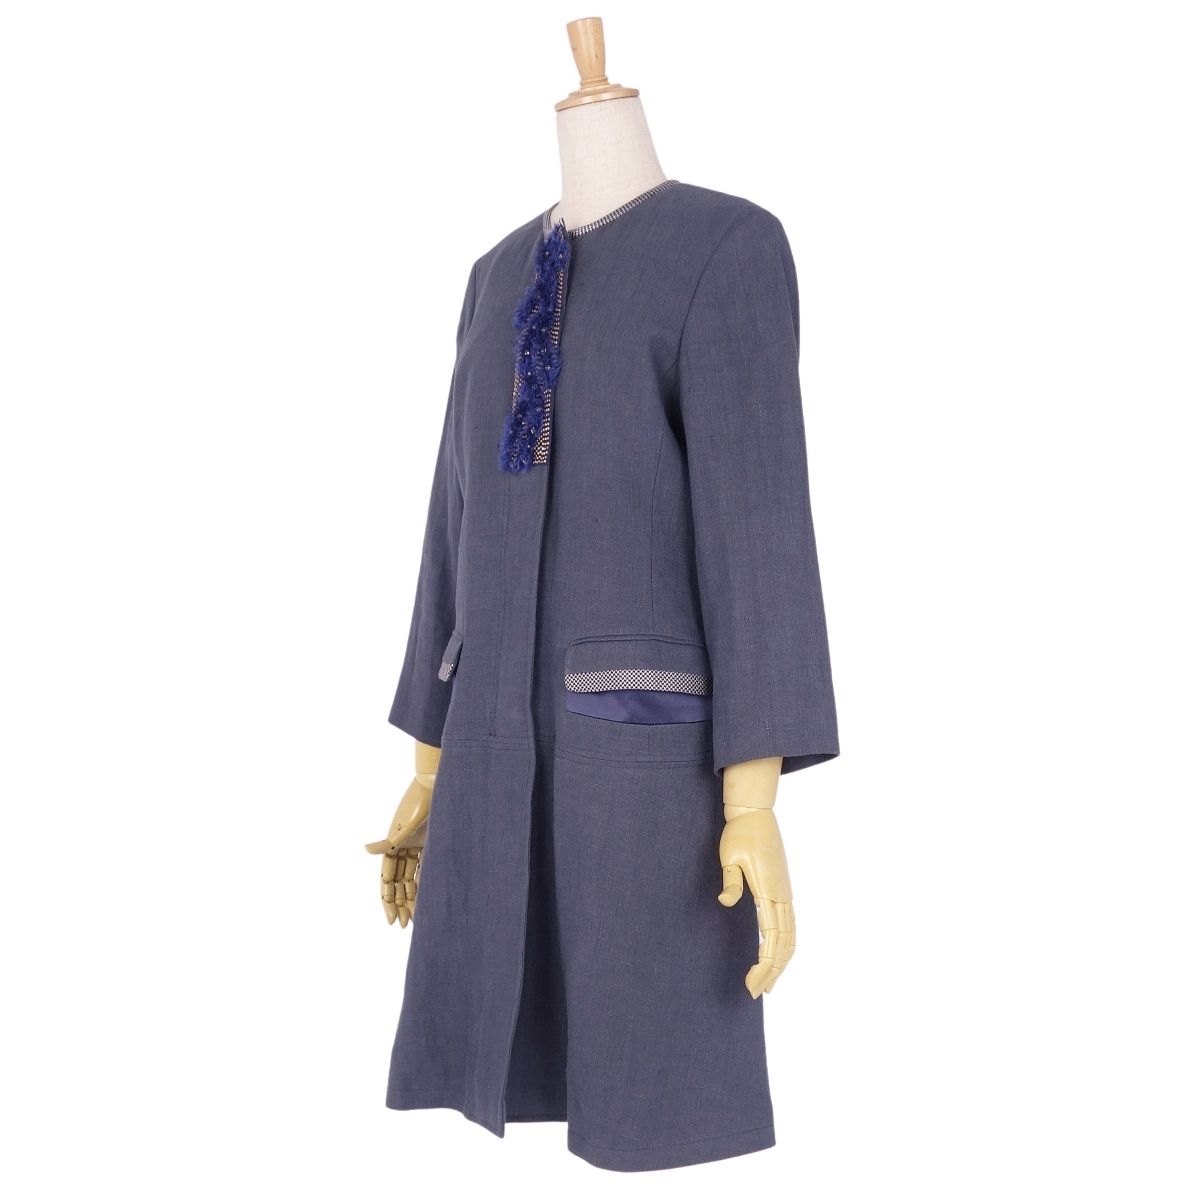  прекрасный товар Etro ETRO пальто linen шелк no color стразы подкладка общий рисунок женский внешний 40(M соответствует ) темно-синий cg02dd-rm11c13744